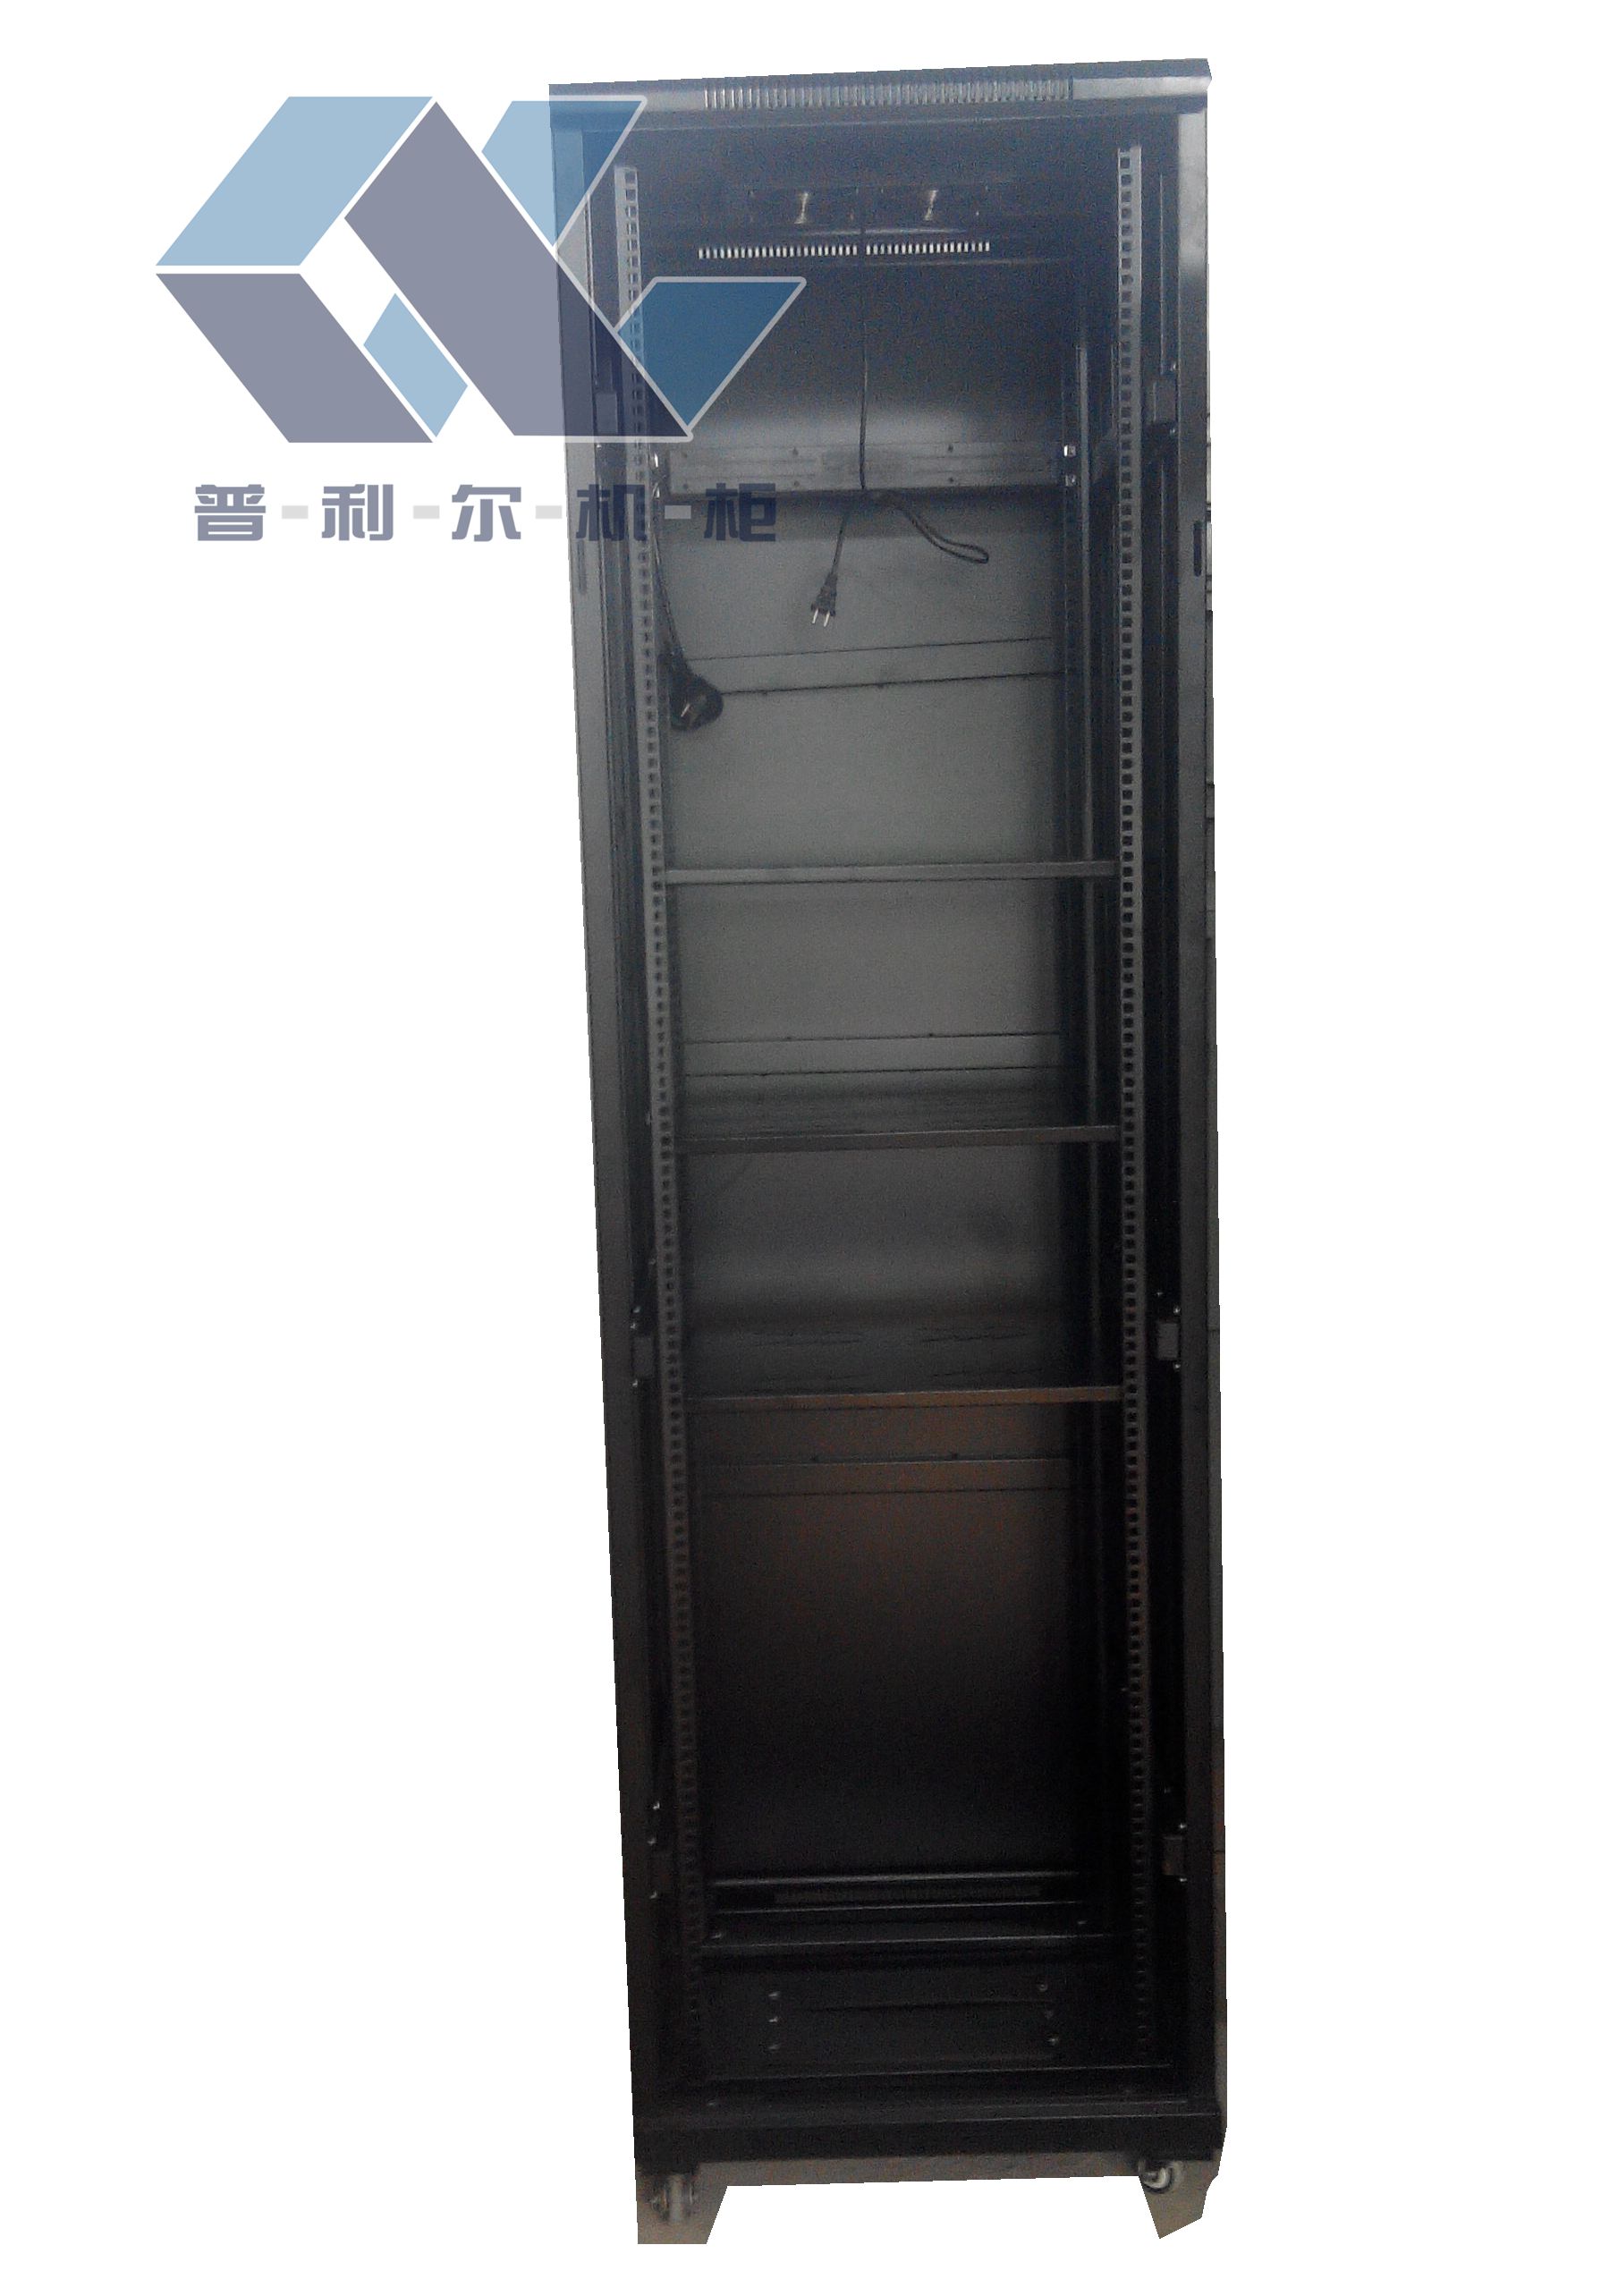 机柜订做机房专用机柜网络机柜普利尔网络机柜42U广州机柜厂家